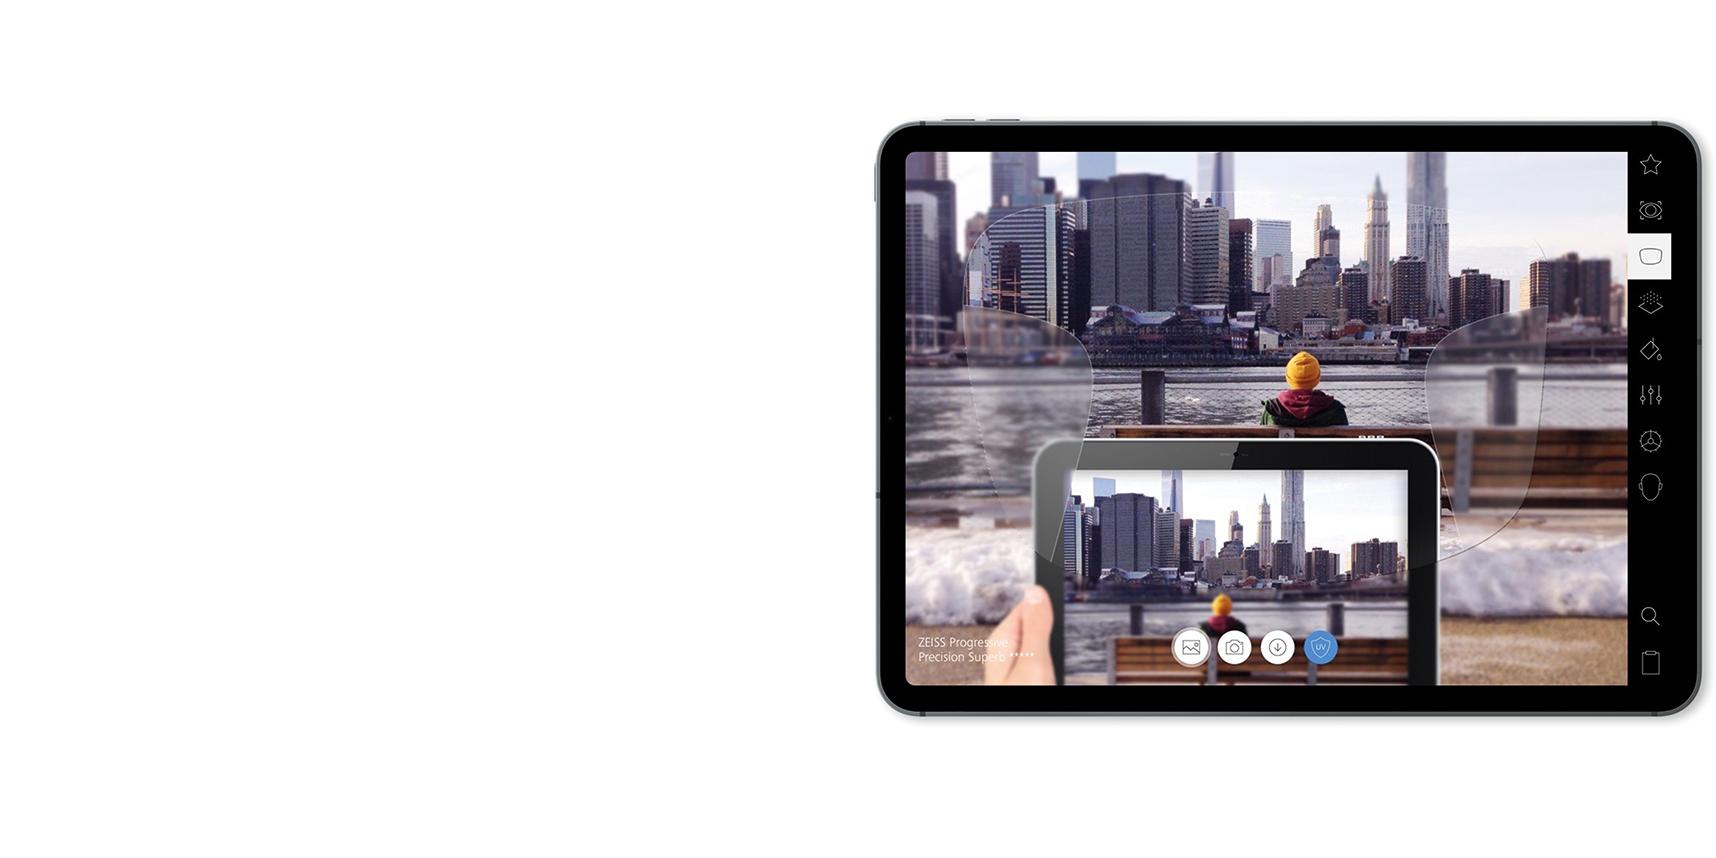 Prezentacja soczewek ZEISS na iPadzie w AR.